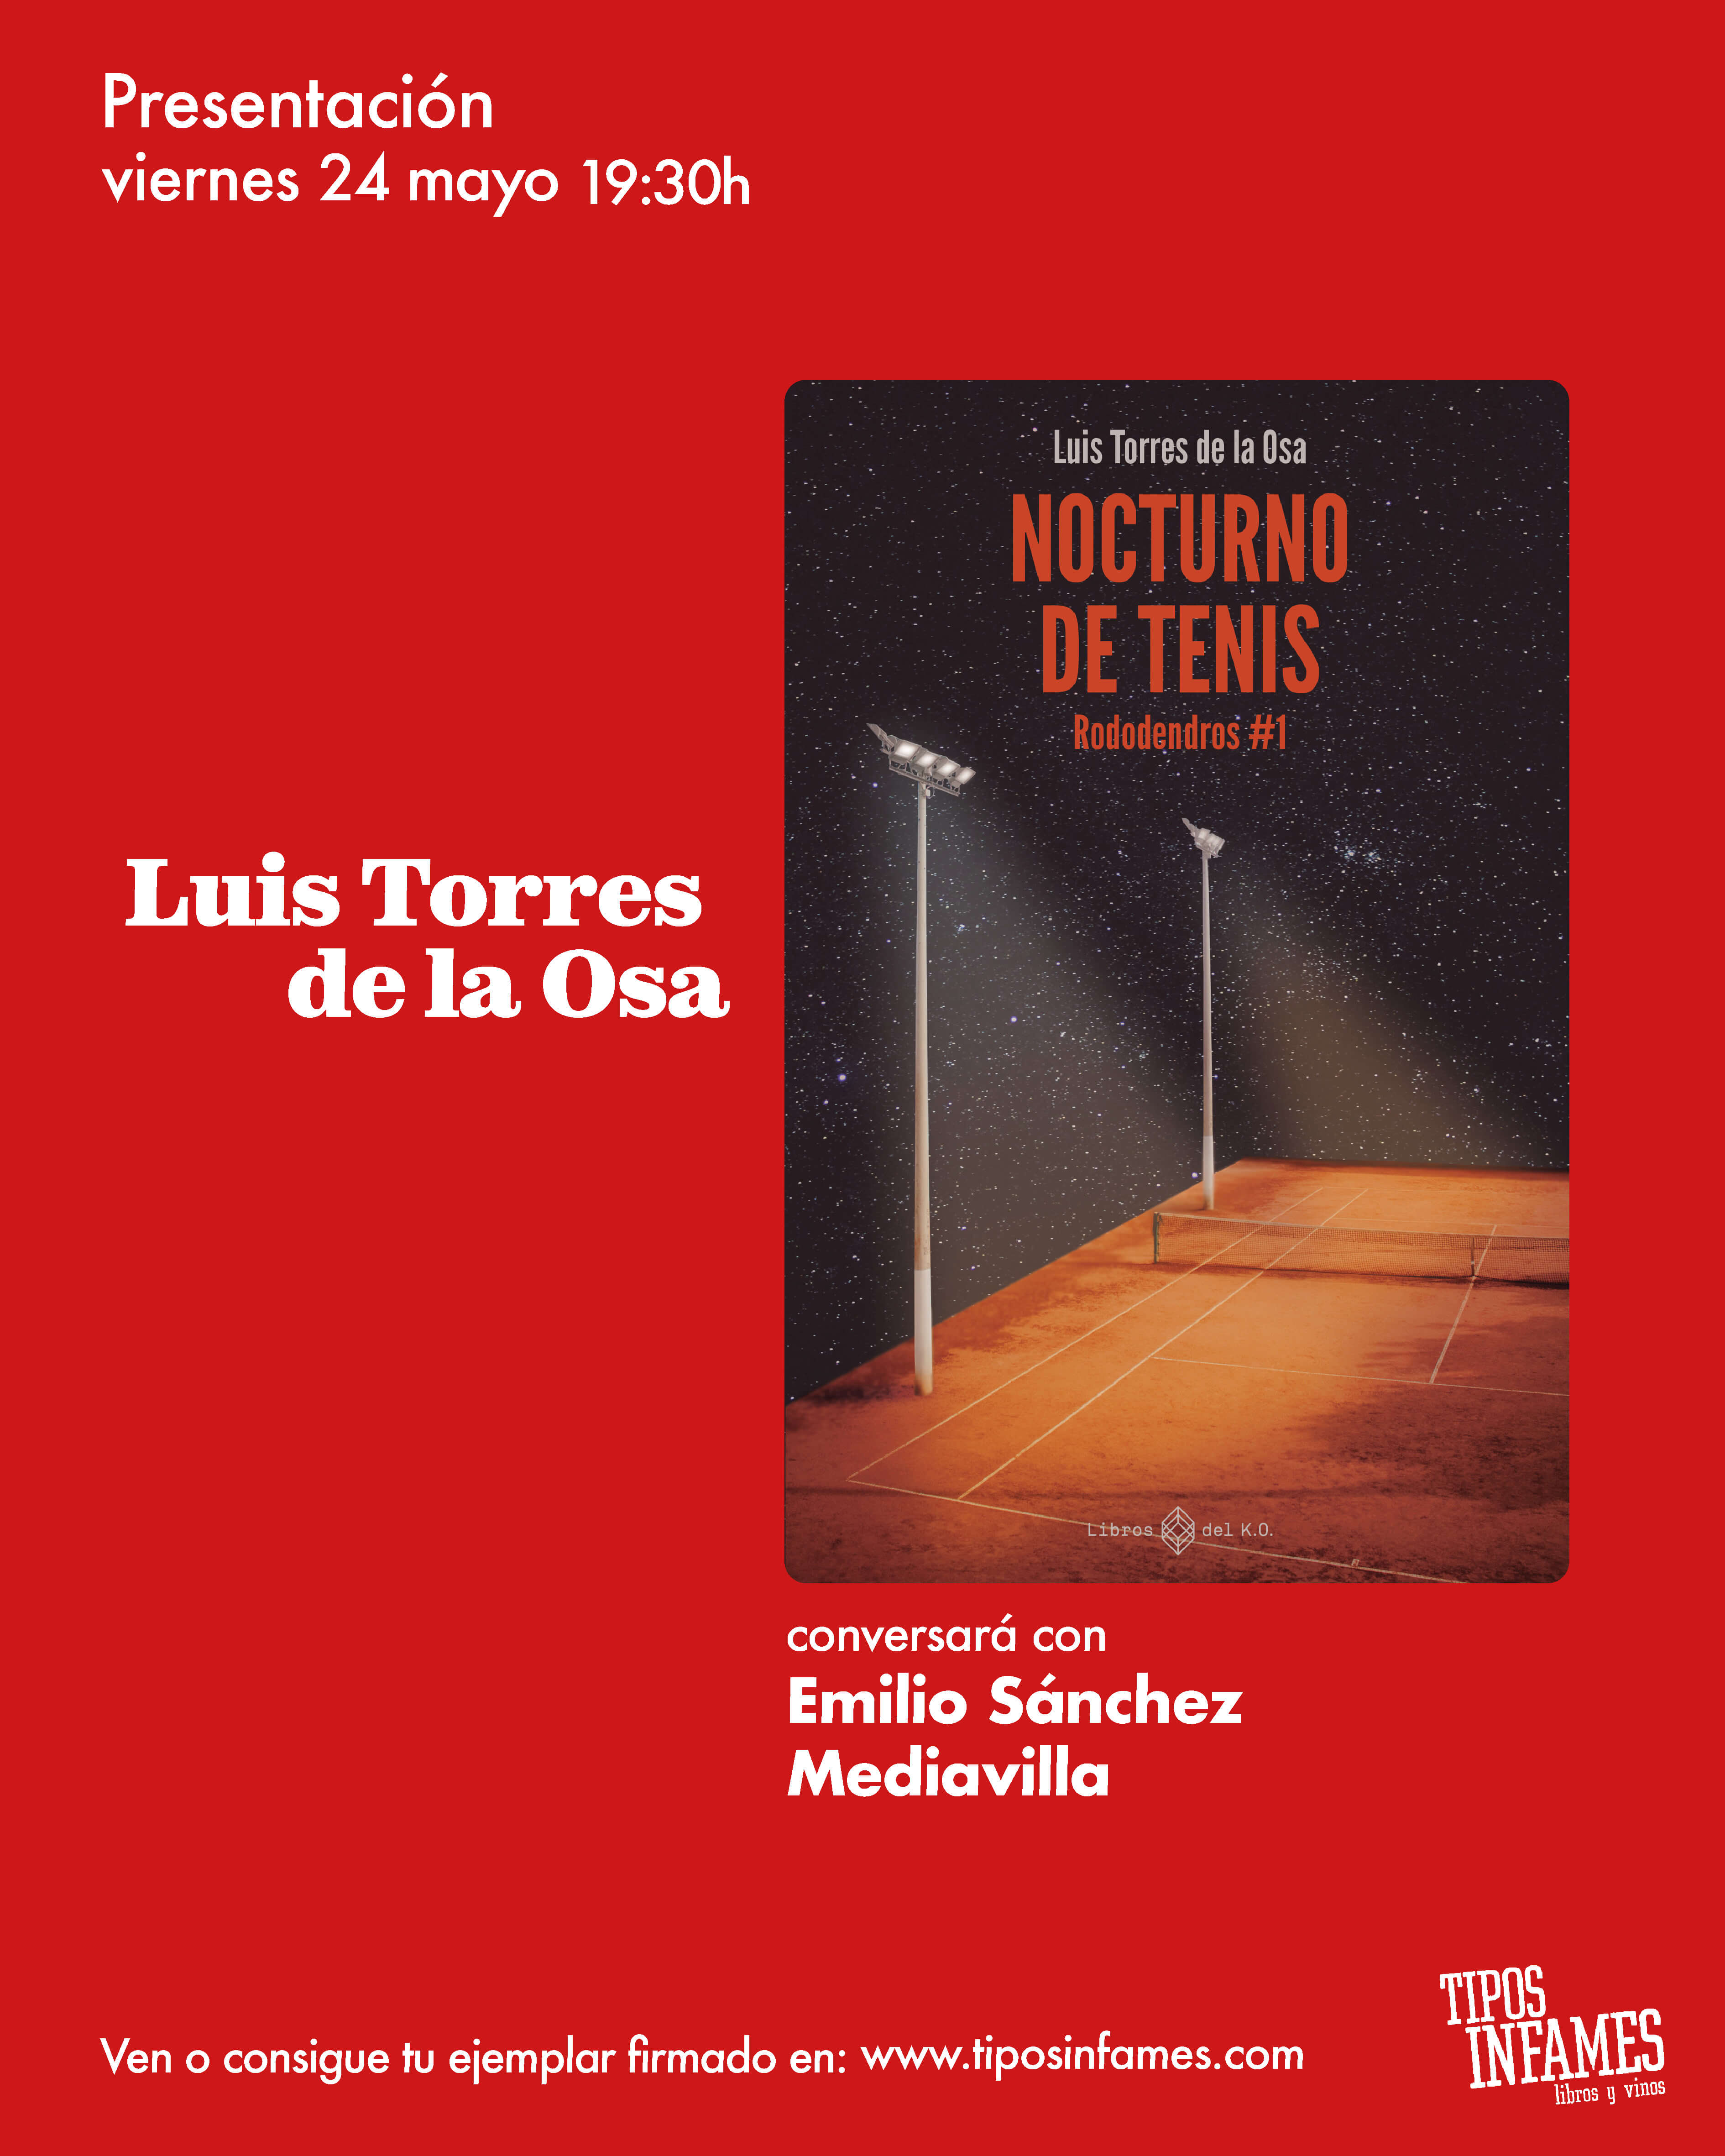 Nocturno de tenis, de Luis Torres de la Osa